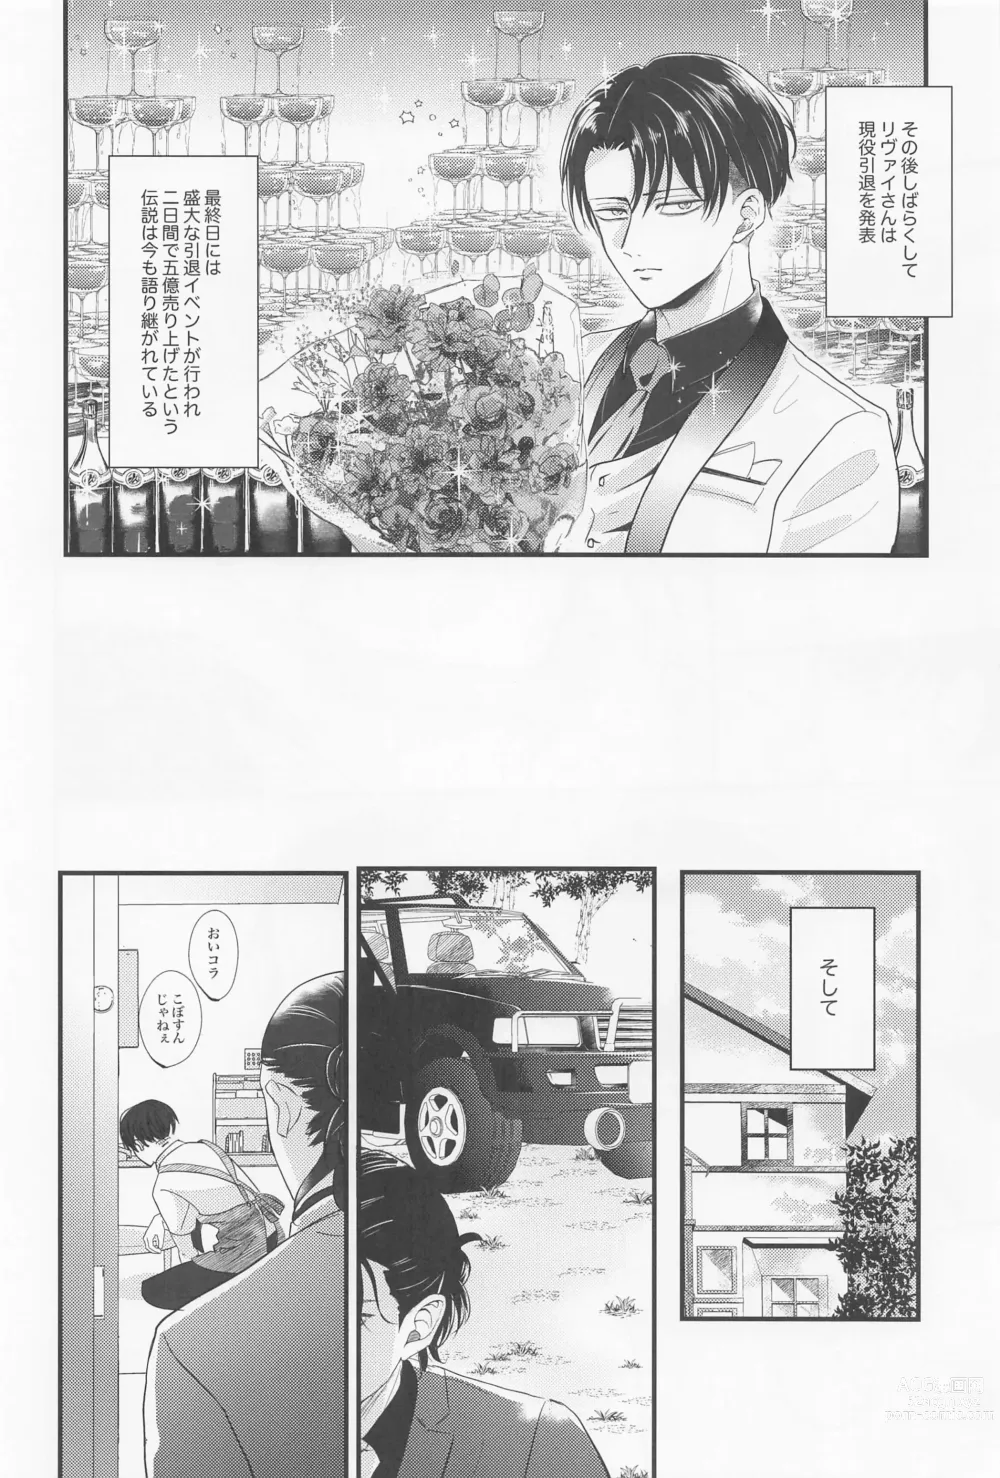 Page 63 of doujinshi Eikyuu Shimei